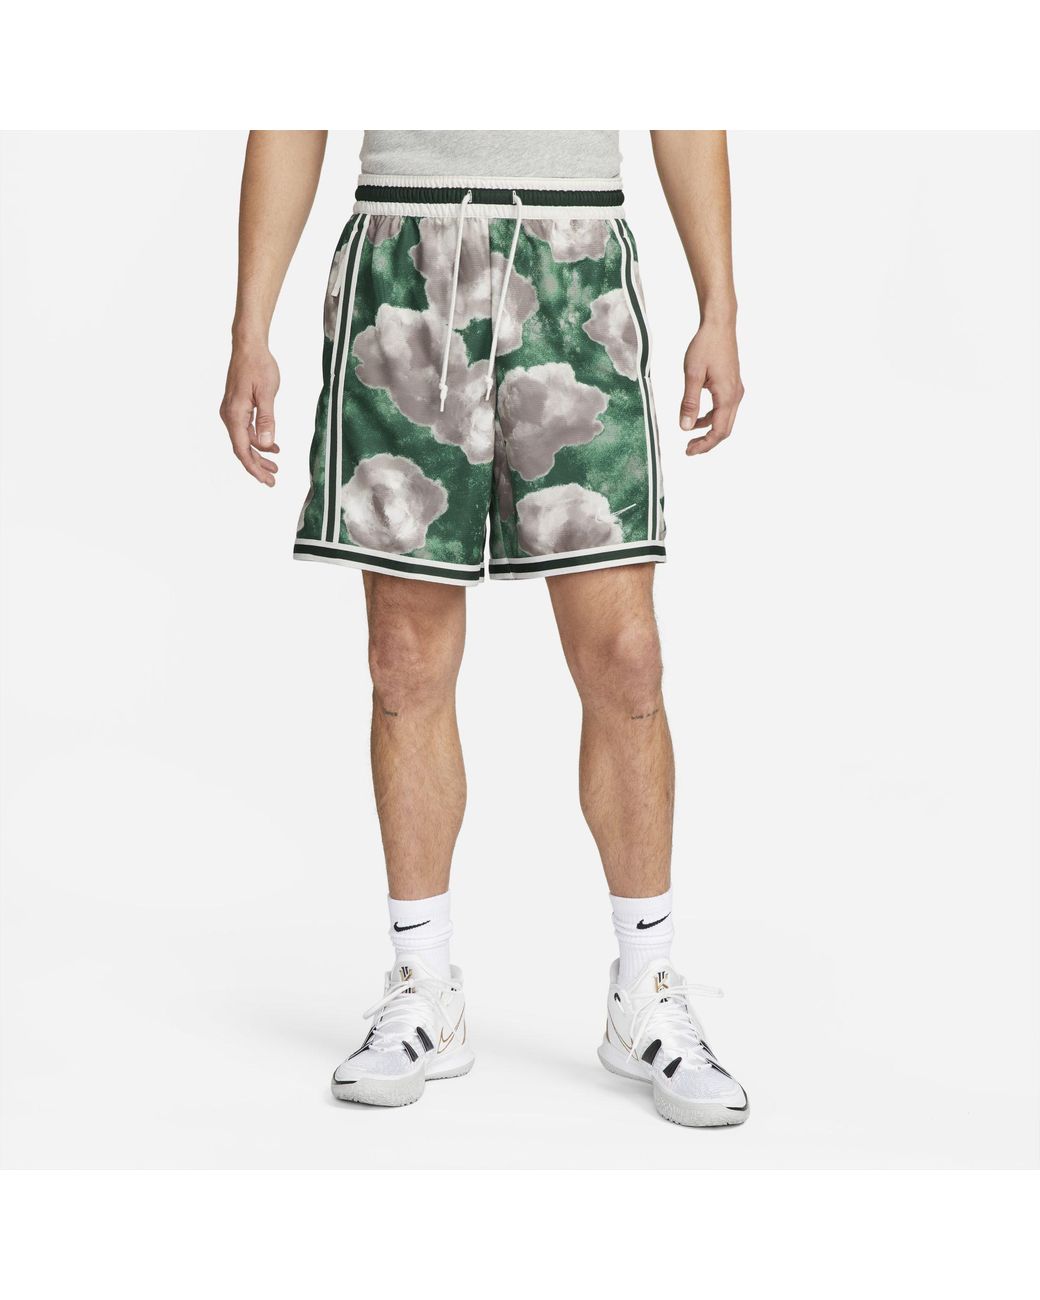 Alentar Anuncio Asco Nike Dna+ Floral Basketball Shorts In Green, for Men | Lyst